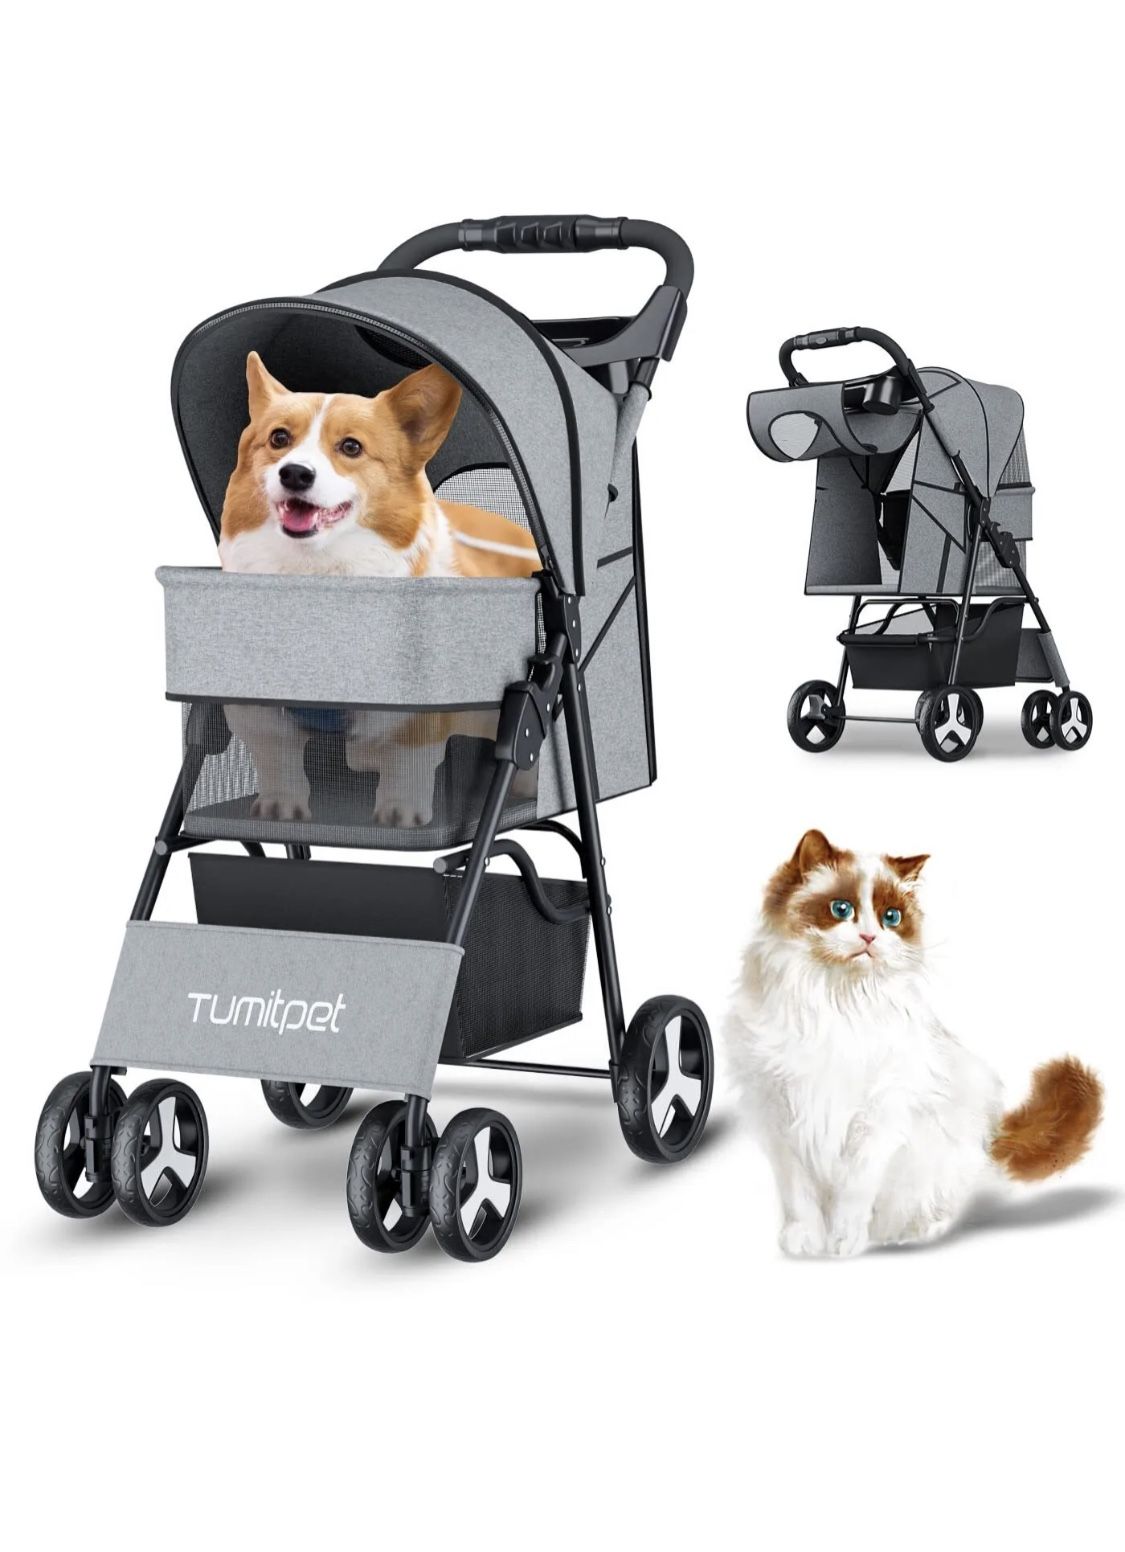 4 Wheels Folding Pet Stroller Cat Dog Cage Stroller Portable Travel Carrier US